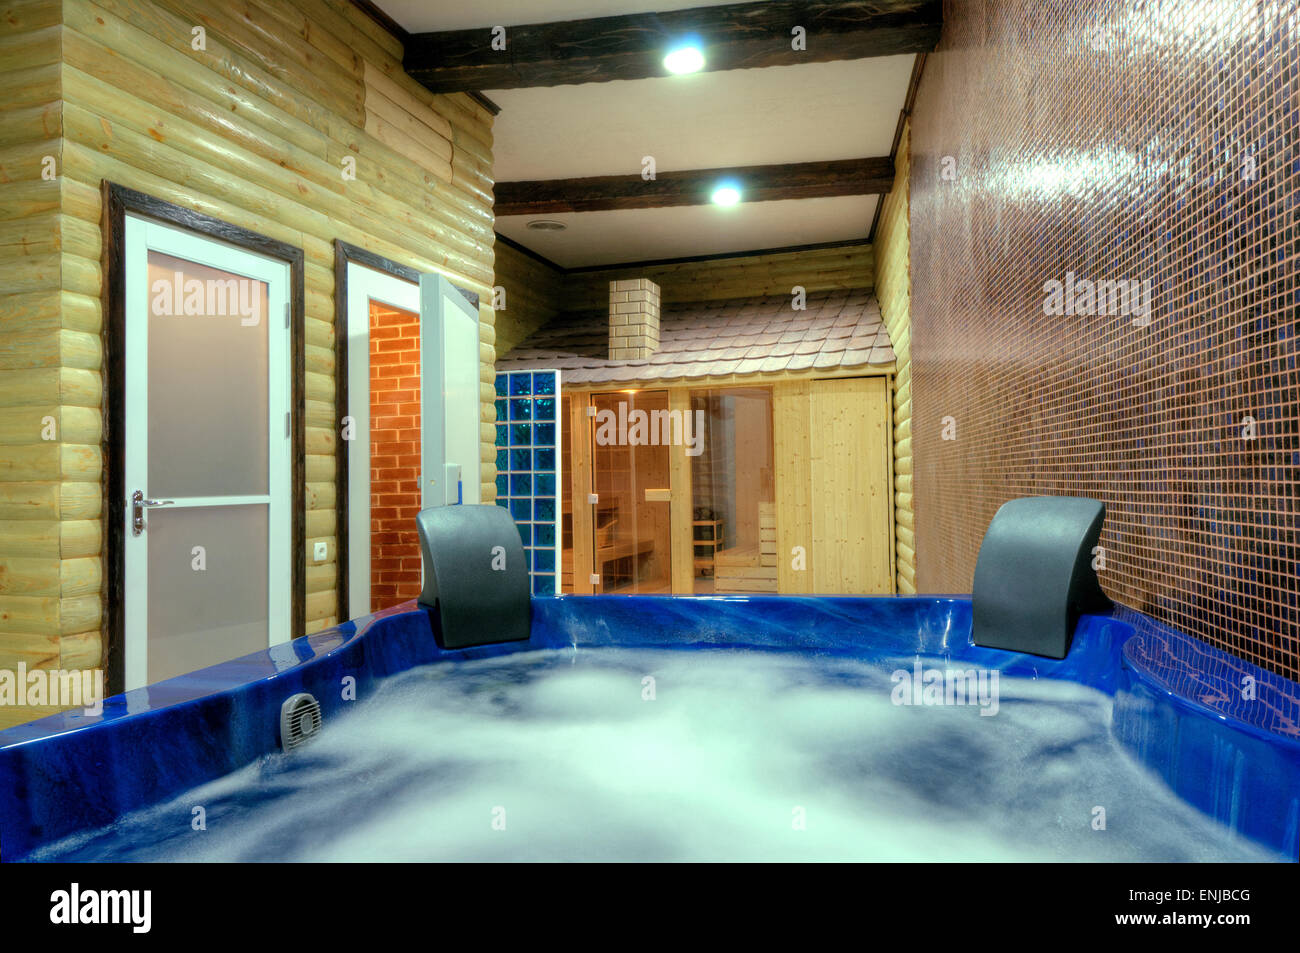 Jacuzzi-Whirlpool-Badewanne in einem Badezimmer aus Marmor. Stockfoto